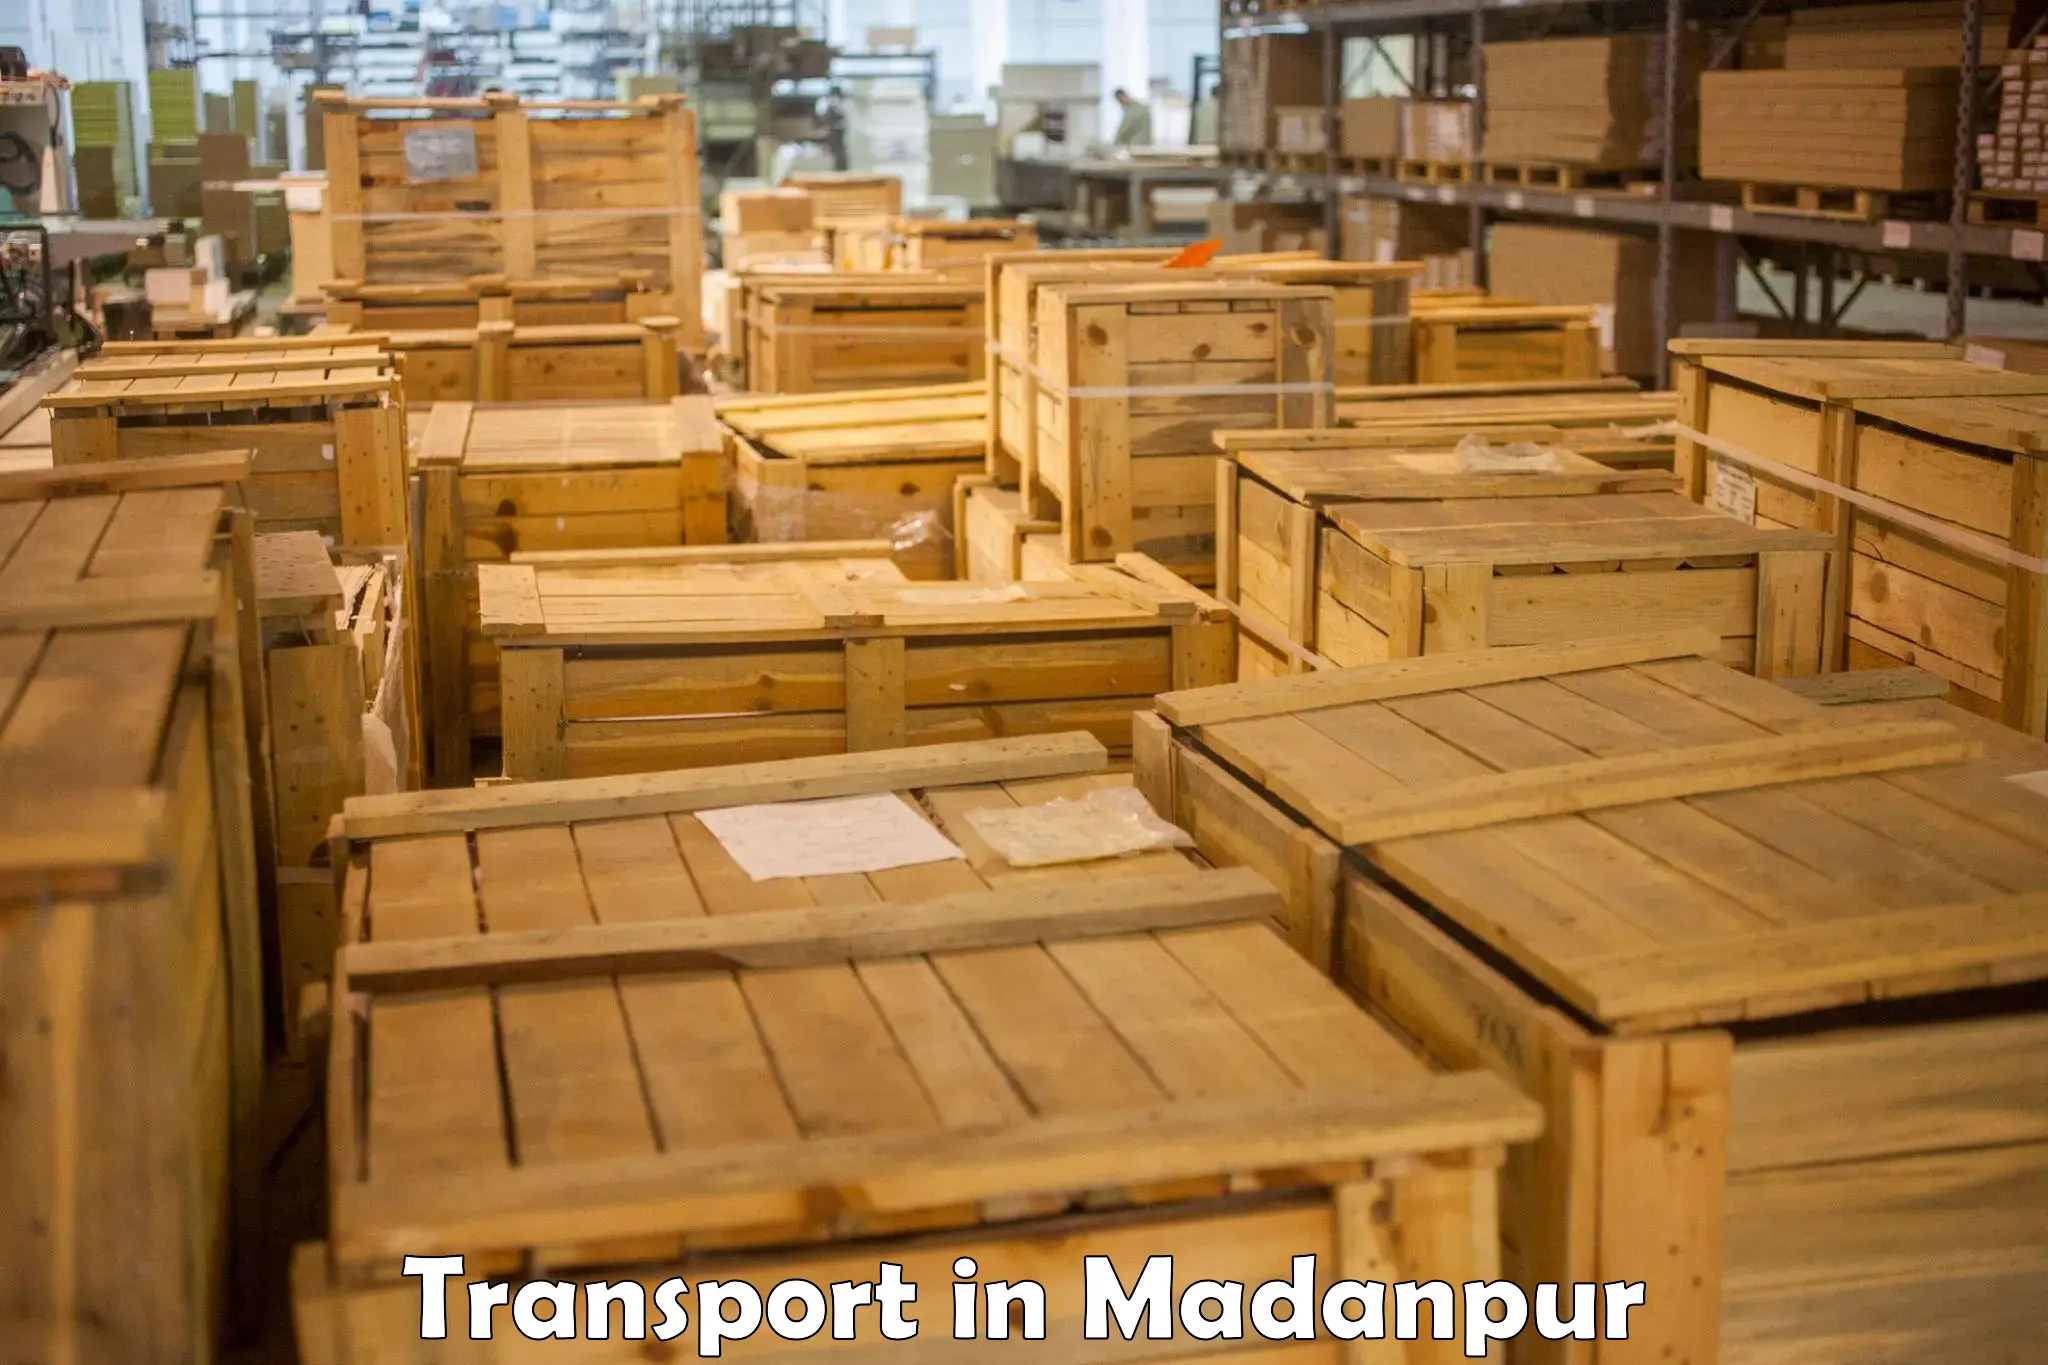 Furniture transport service in Madanpur